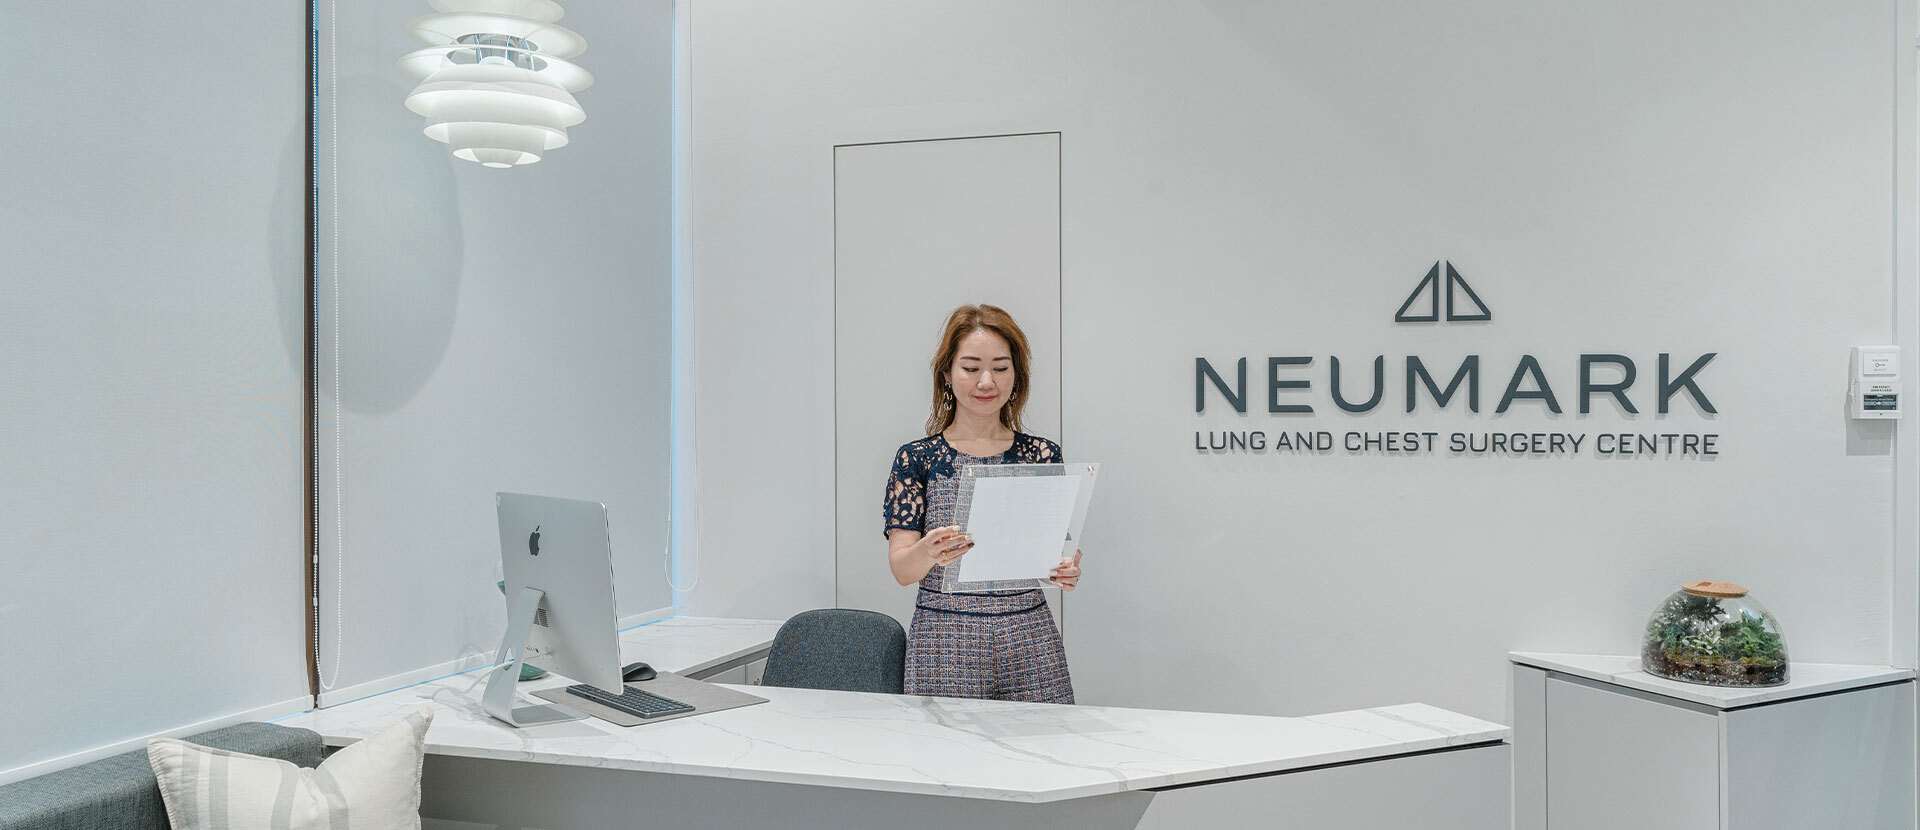 Neumark_office